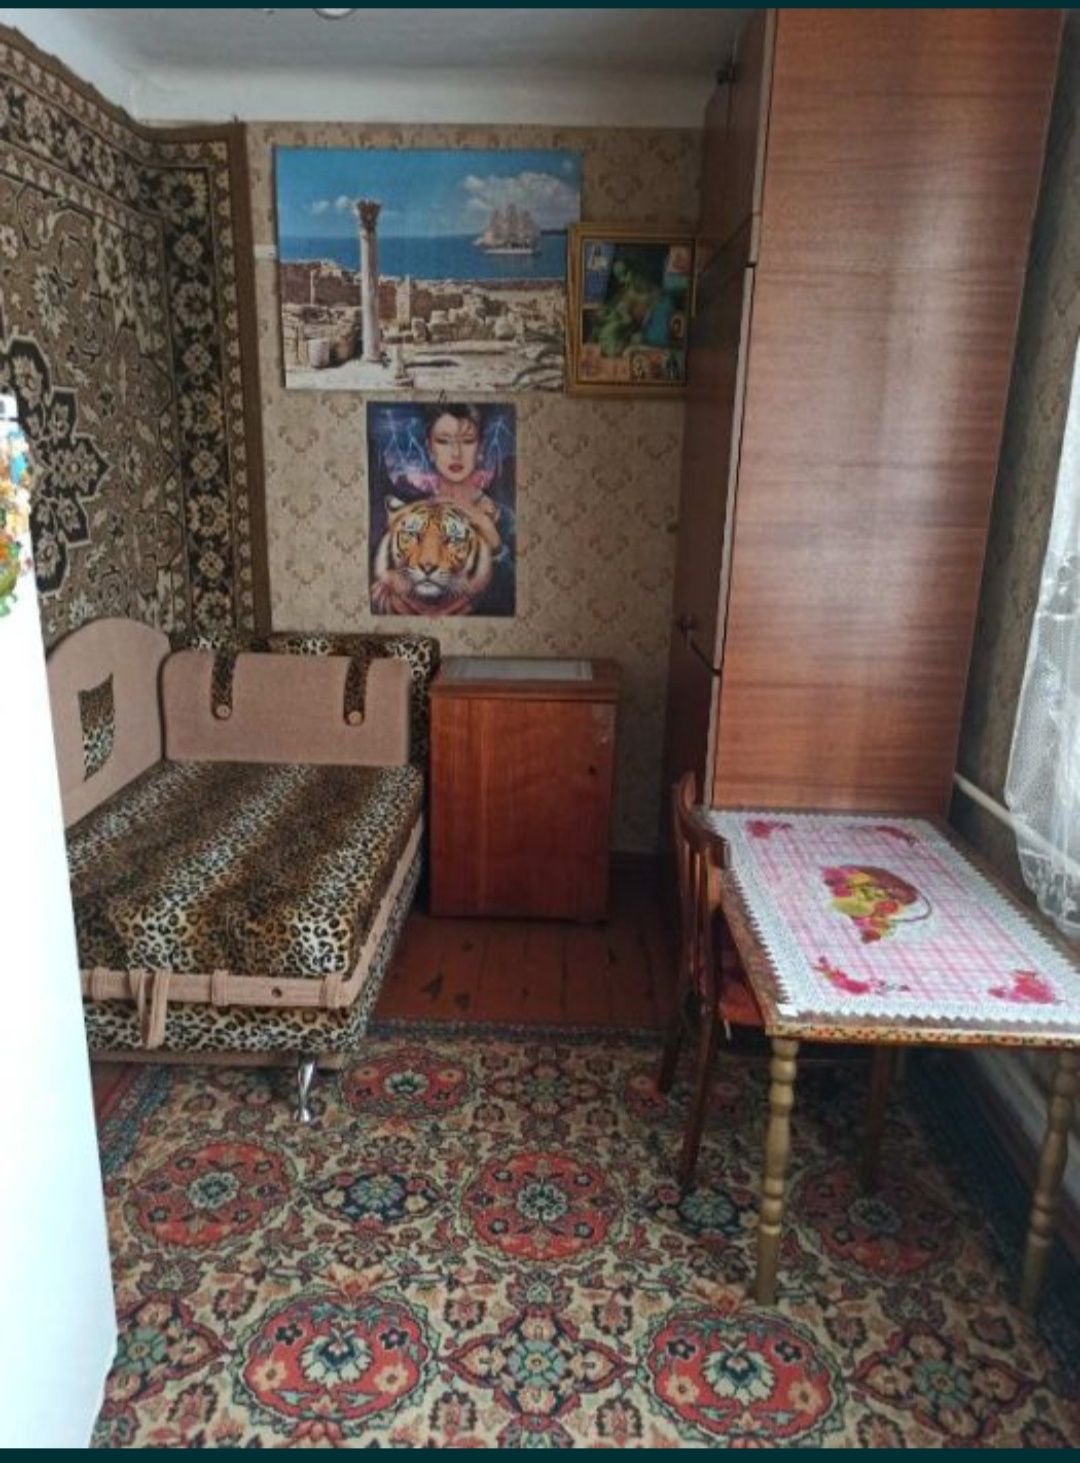 Обменяю  или продам 2 ух комнатную квартиру в Кременчуге на Киев